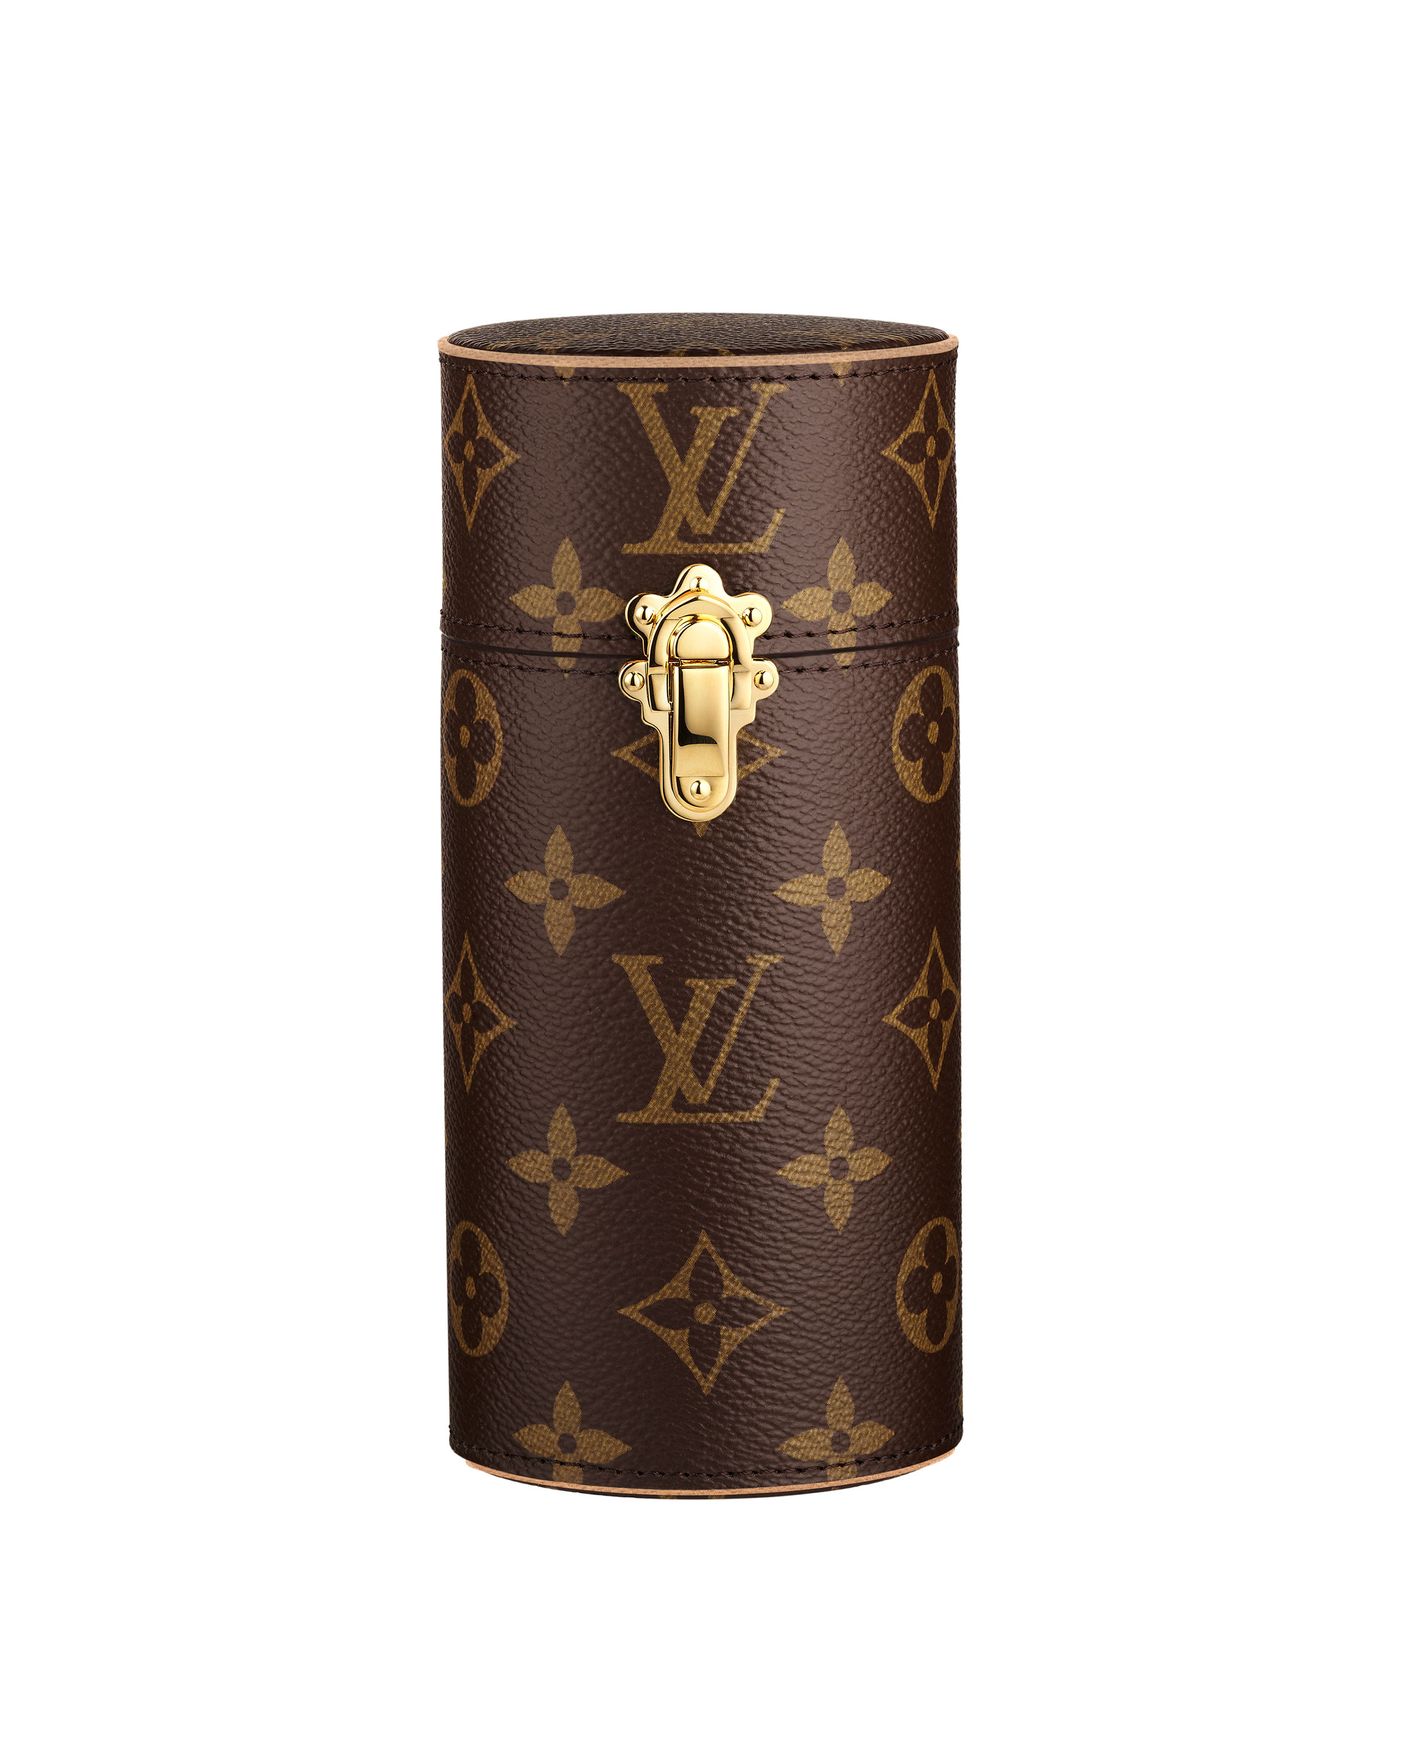 Les Parfums Louis Vuitton for Men: An Introduction